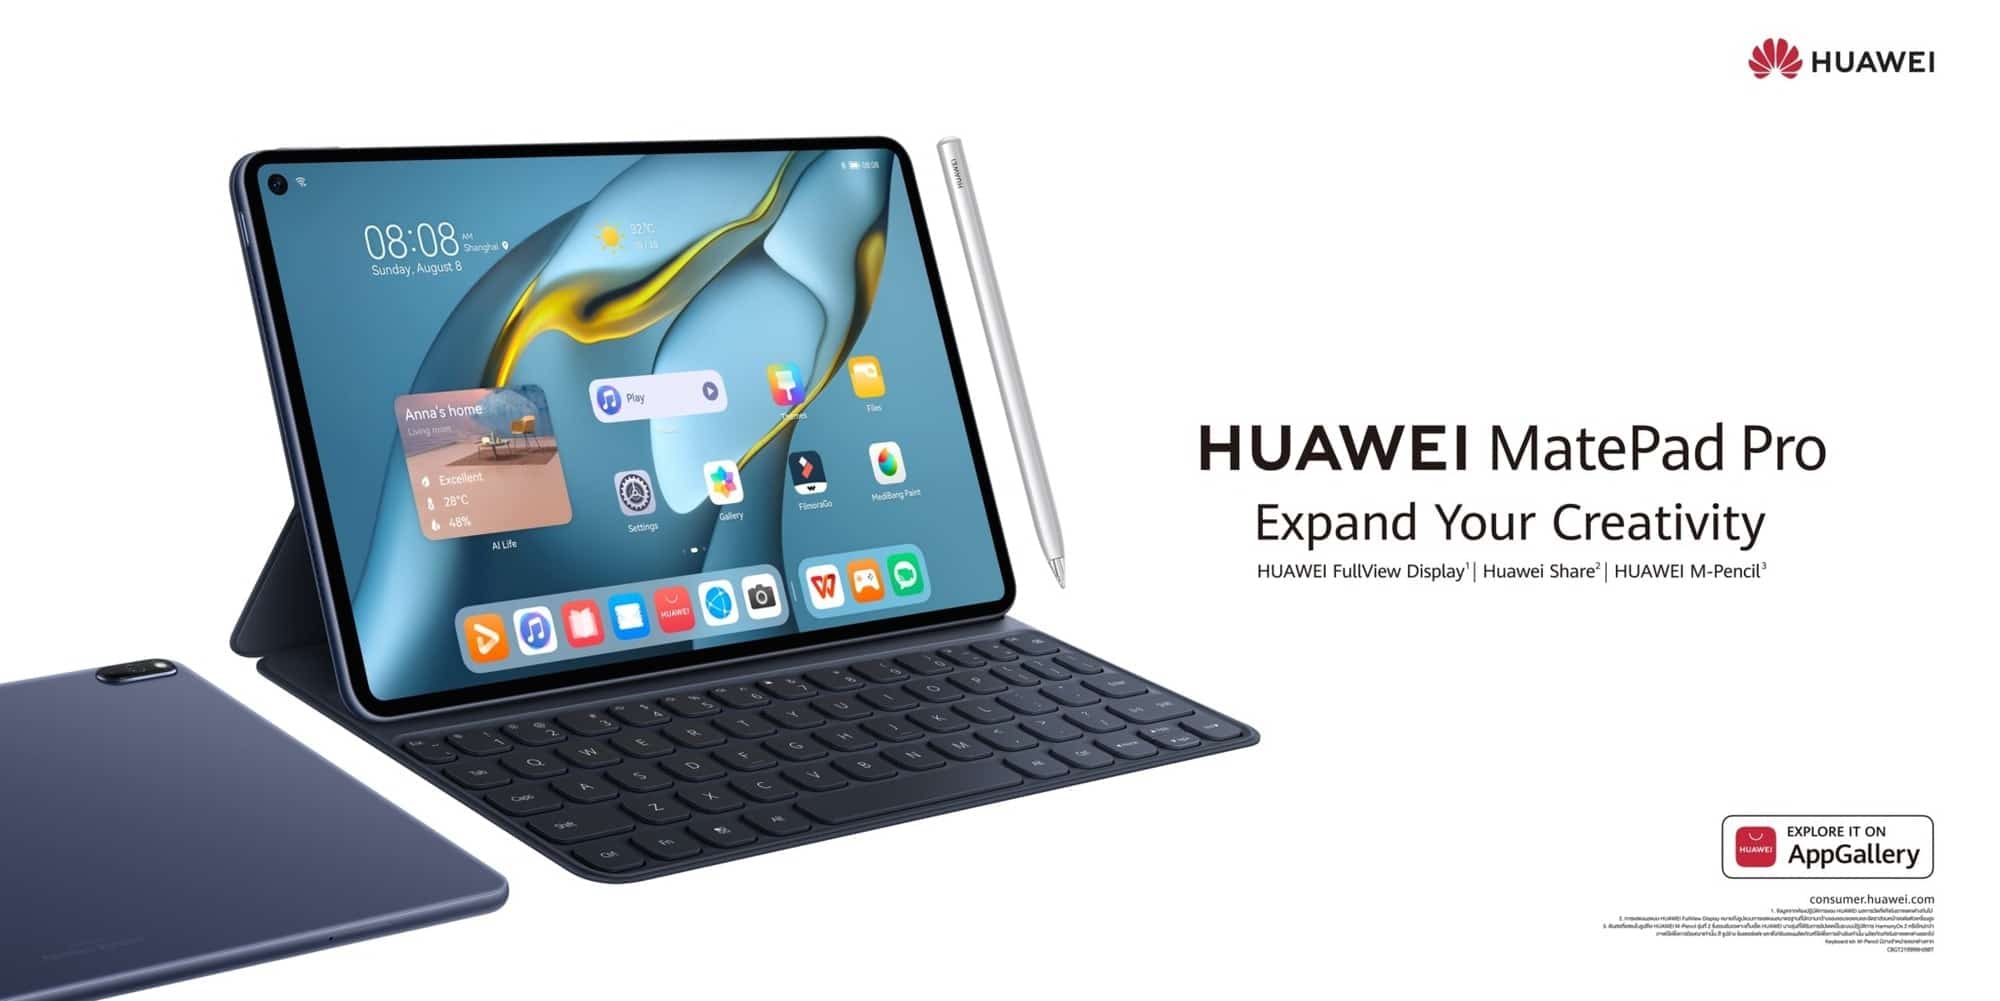 HUAWEI MatePad Pro 10.8-inch ไอเทมเพื่องานอาร์ตสำหรับคนรุ่นใหม่ สร้างสรรค์สนุก ปลุกจินตนาการ 1